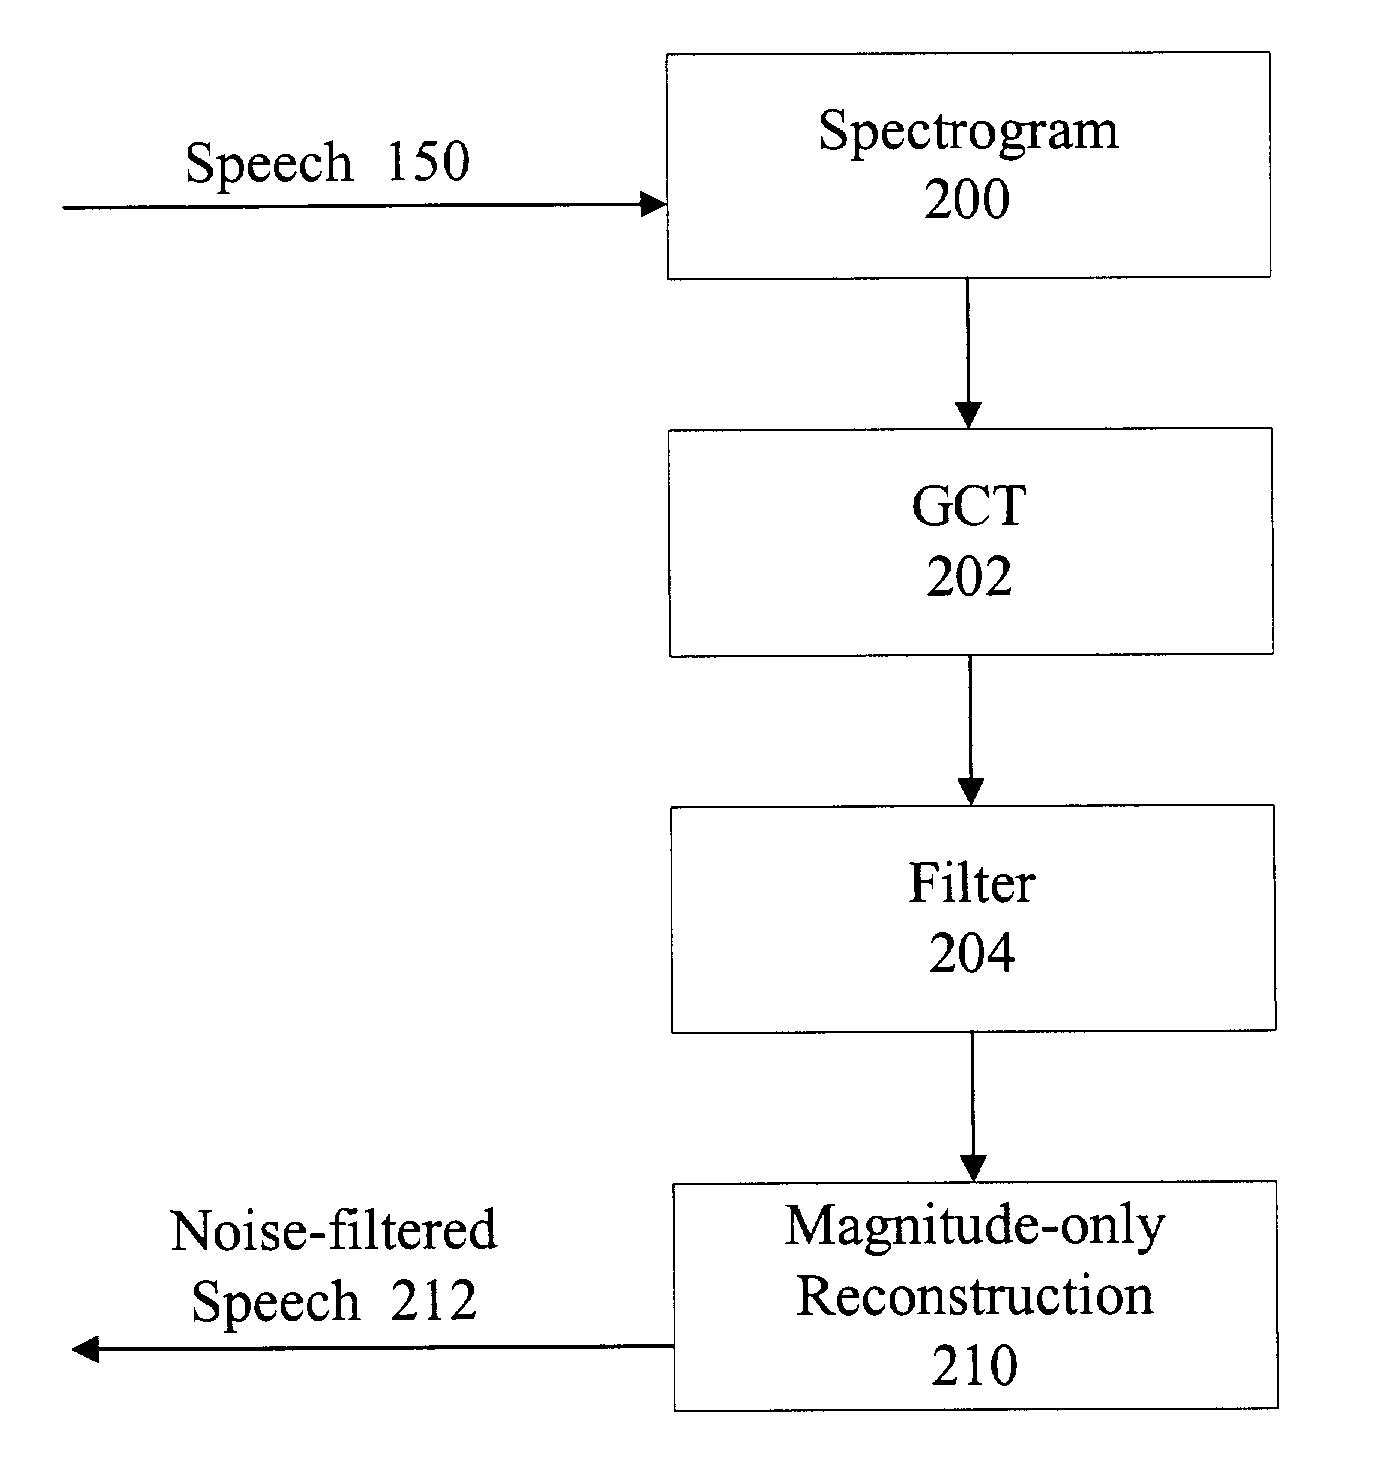 2-D processing of speech